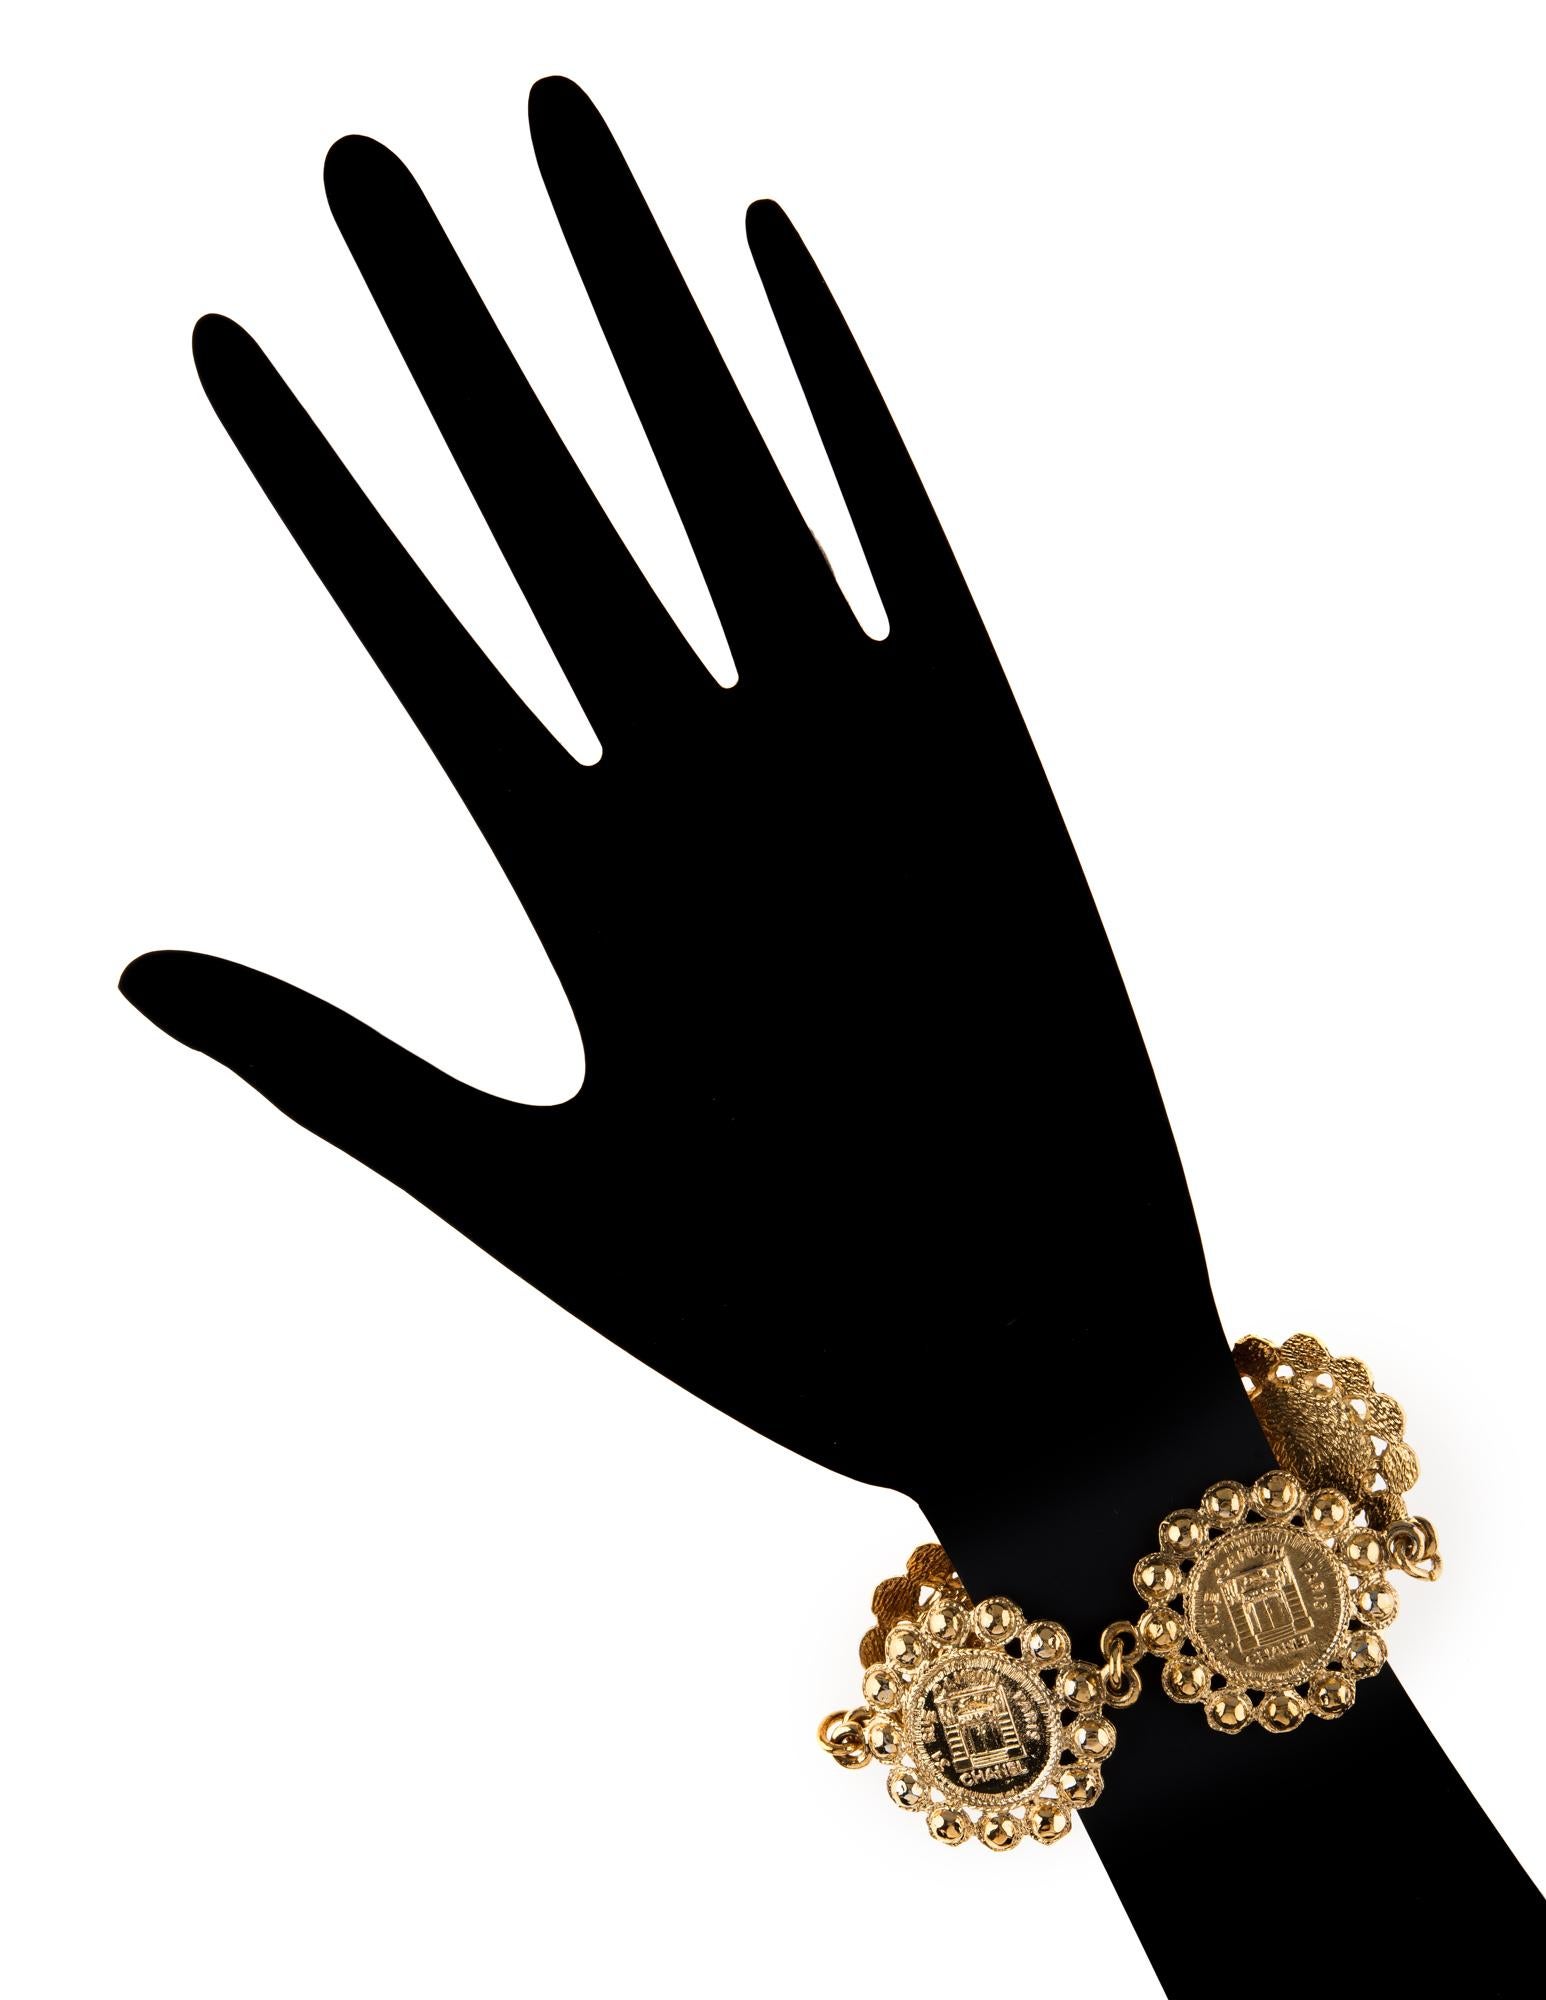 Bracelet vintage Chanel à grande pièce de monnaie médaillon (circa 1980) réalisé en ton or jaune.

Le bracelet comporte de grands maillons embossés de 1 1/4 pouce sur lesquels on peut lire 